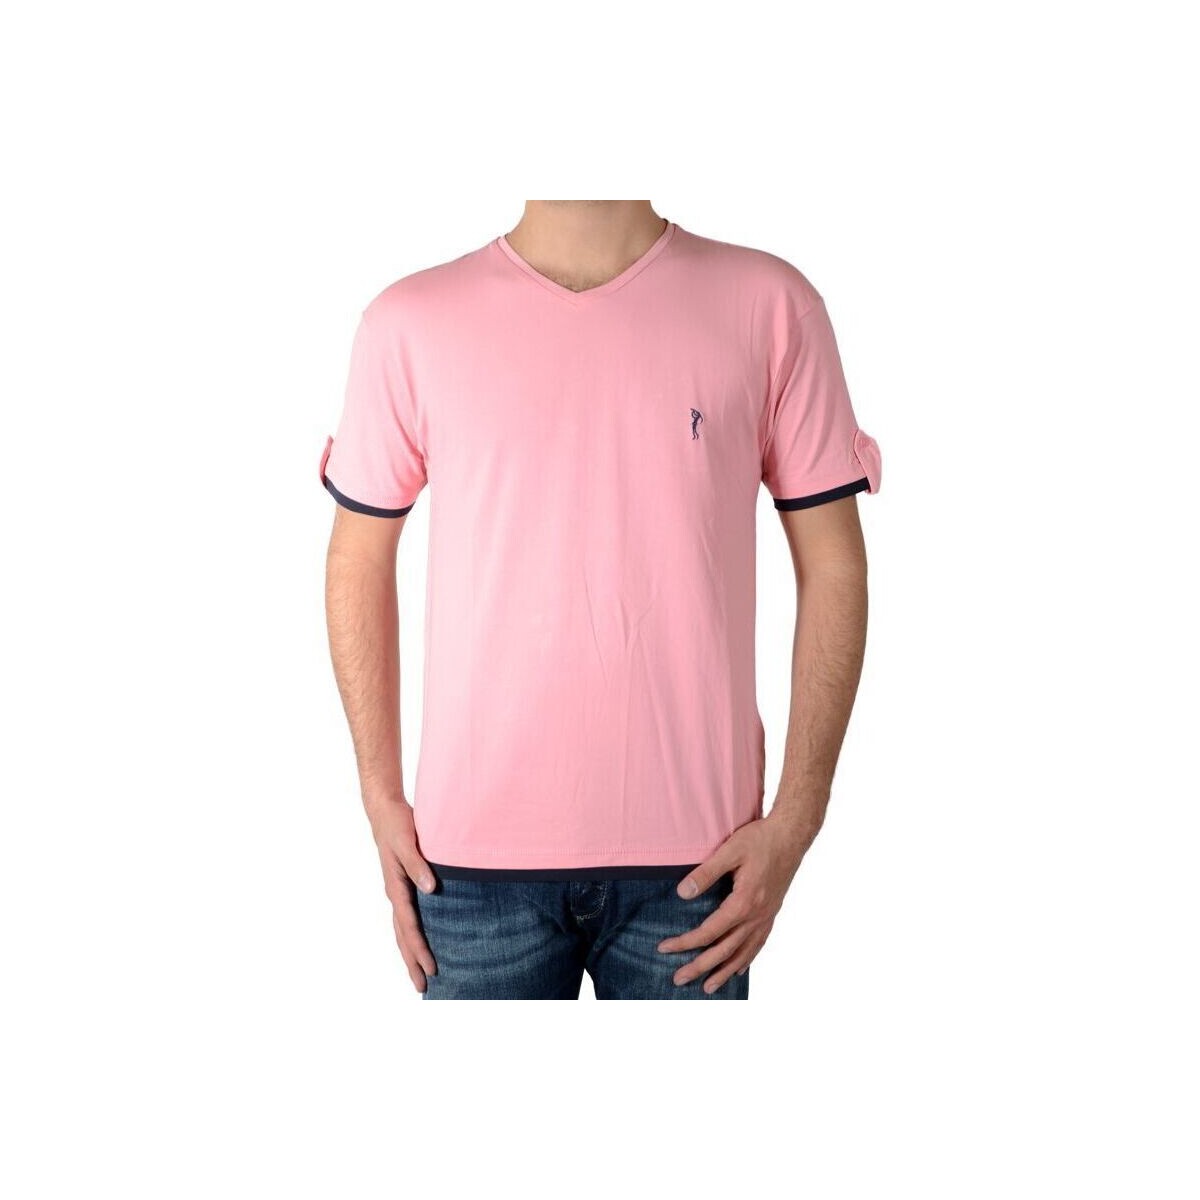 Υφασμάτινα Άνδρας T-shirt με κοντά μανίκια Marion Roth 55790 Ροζ